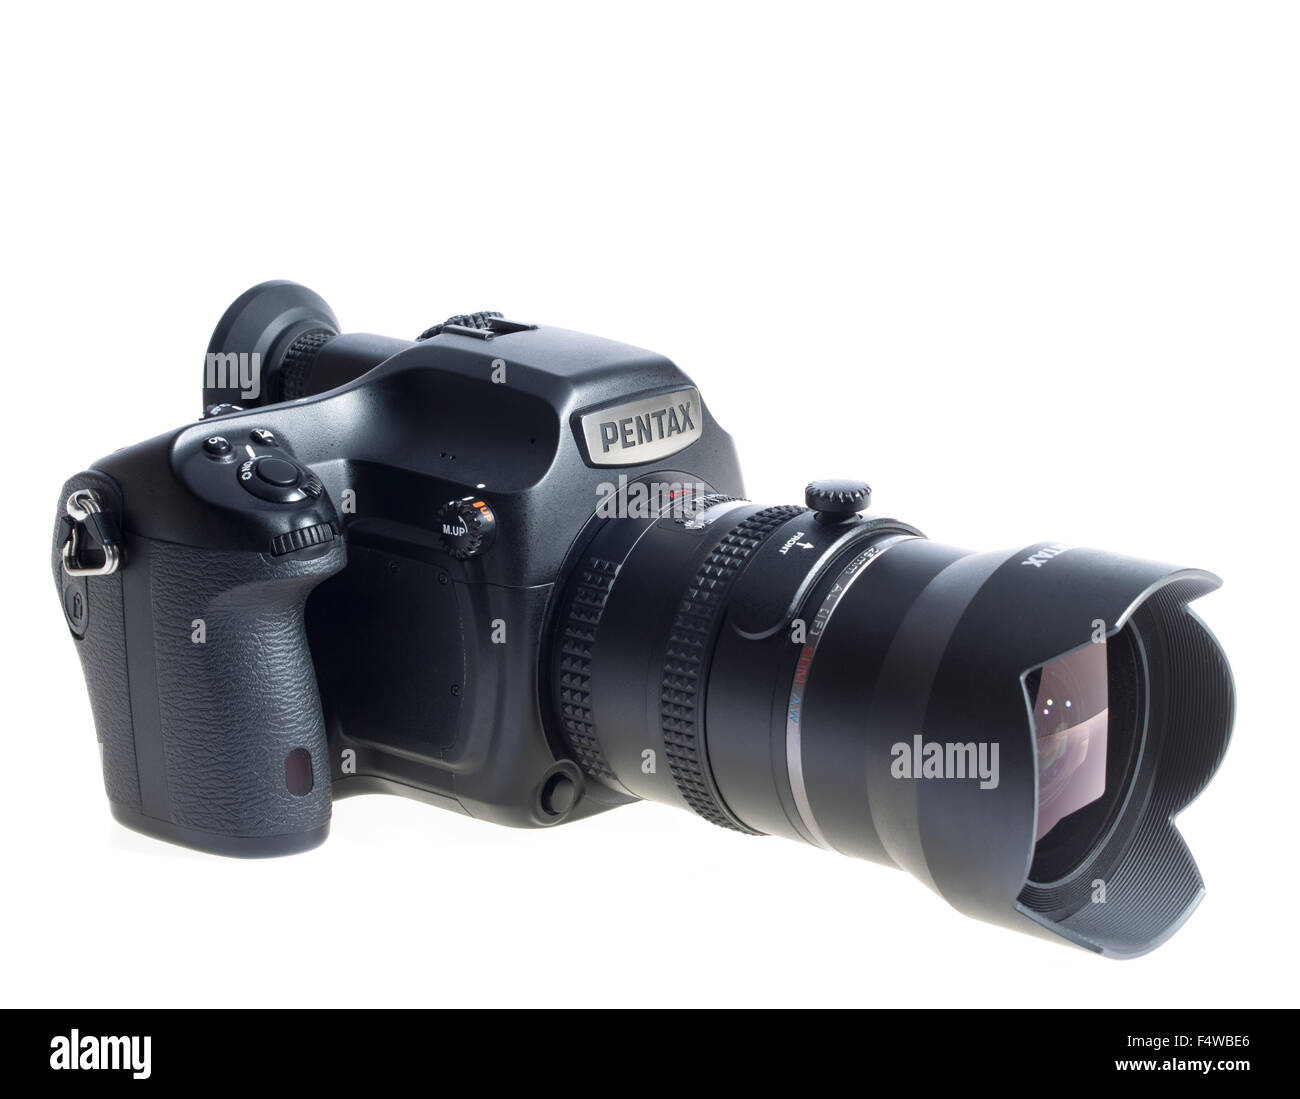 Moyen format Pentax 645Z 53MP Appareil photo reflex numérique avec objectif grand angle de 25 mm. Système de photographie professionnelle. Publié 2014 Banque D'Images